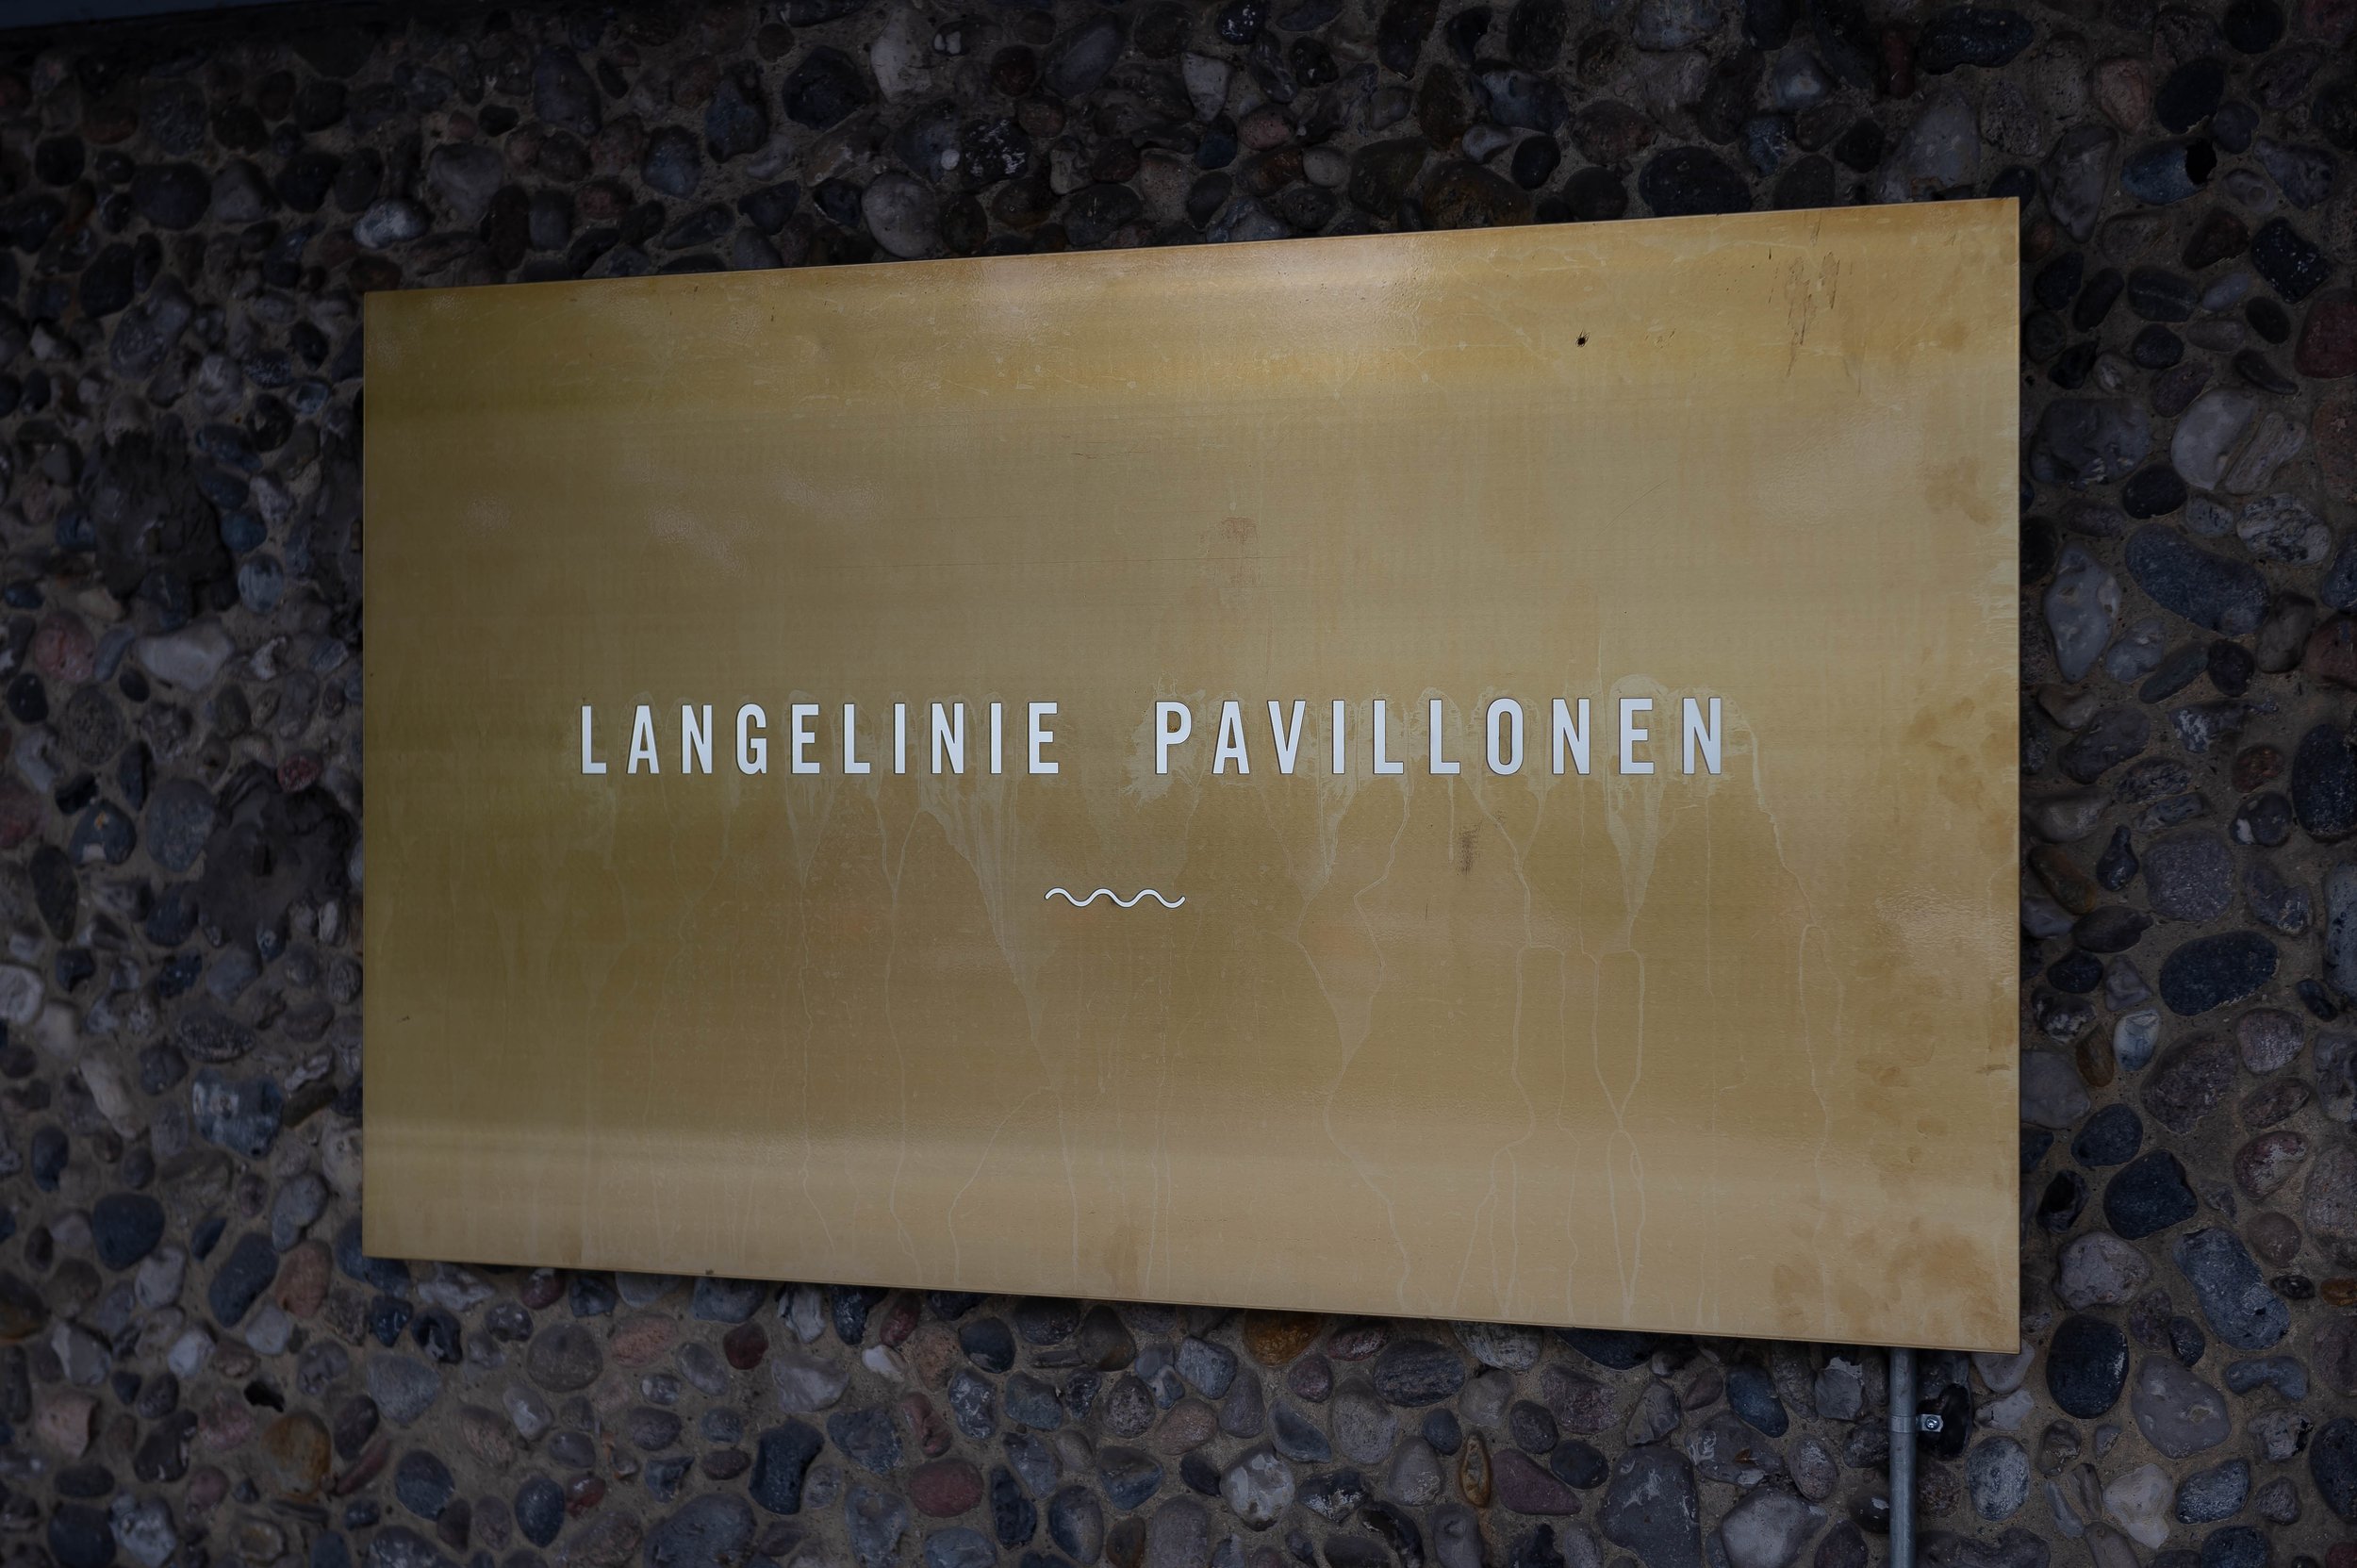 Langelinie_pavillonen_København_Bryllup-101.jpg